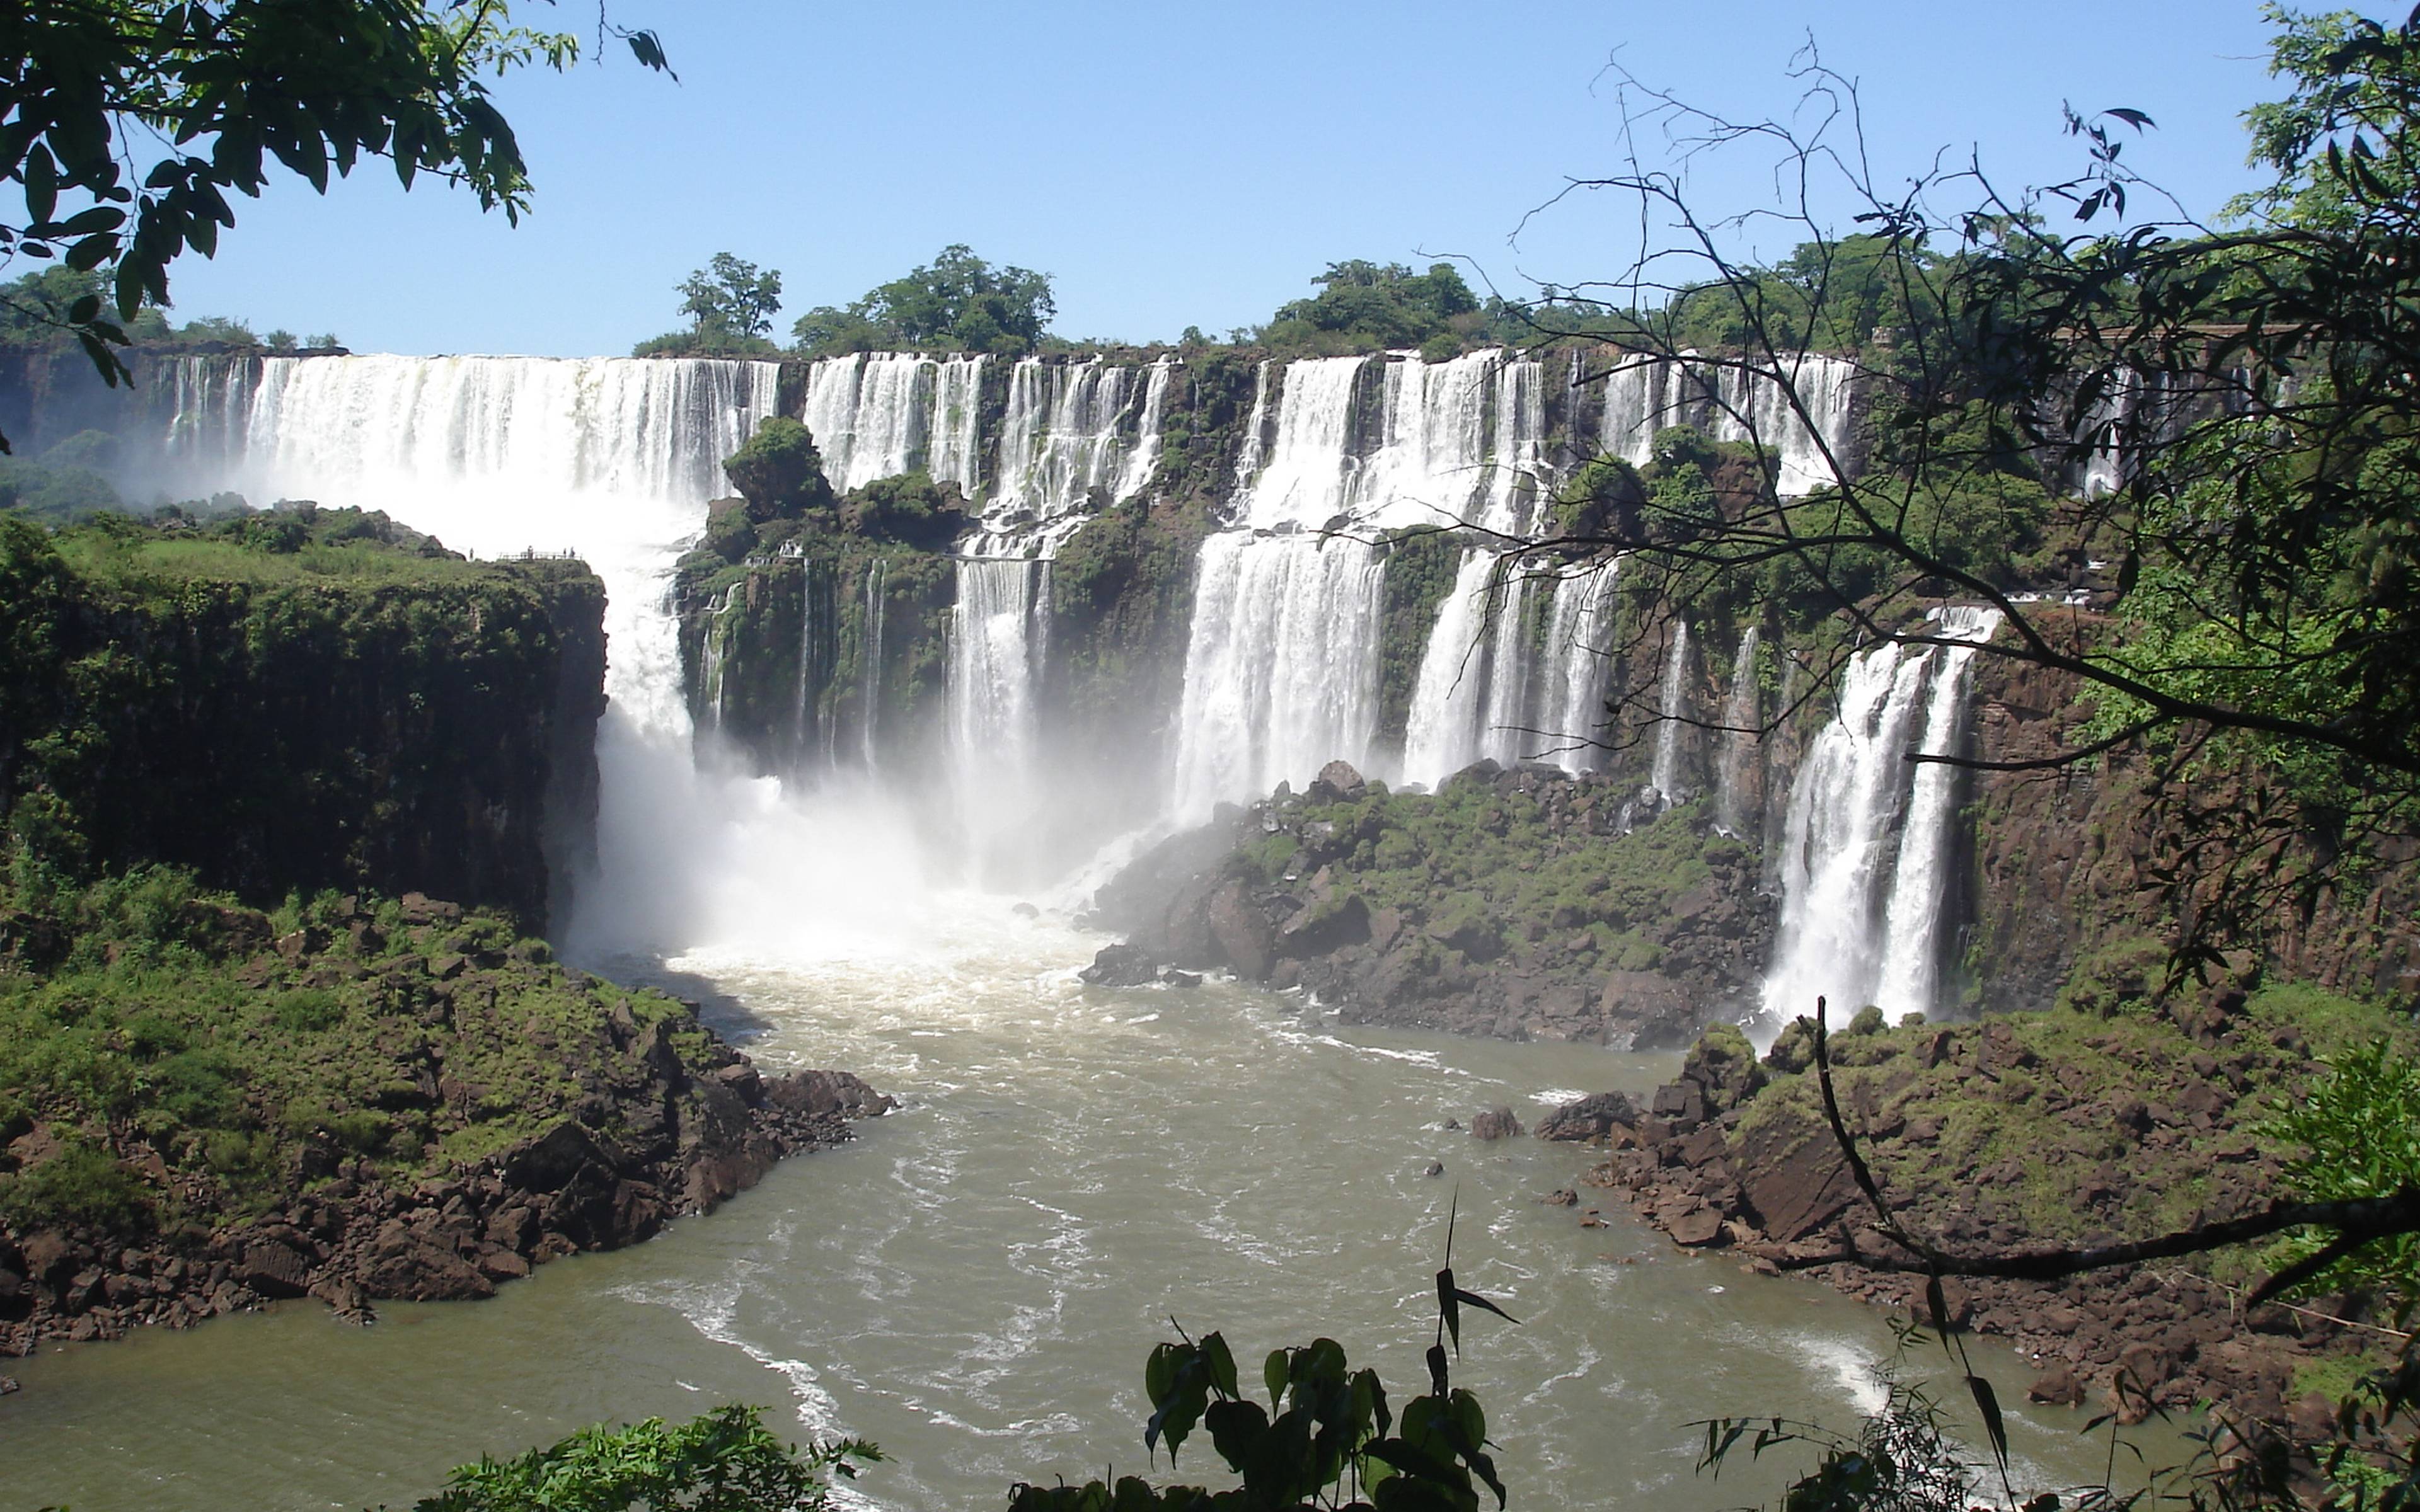 Parco nazionale dell'Iguazú